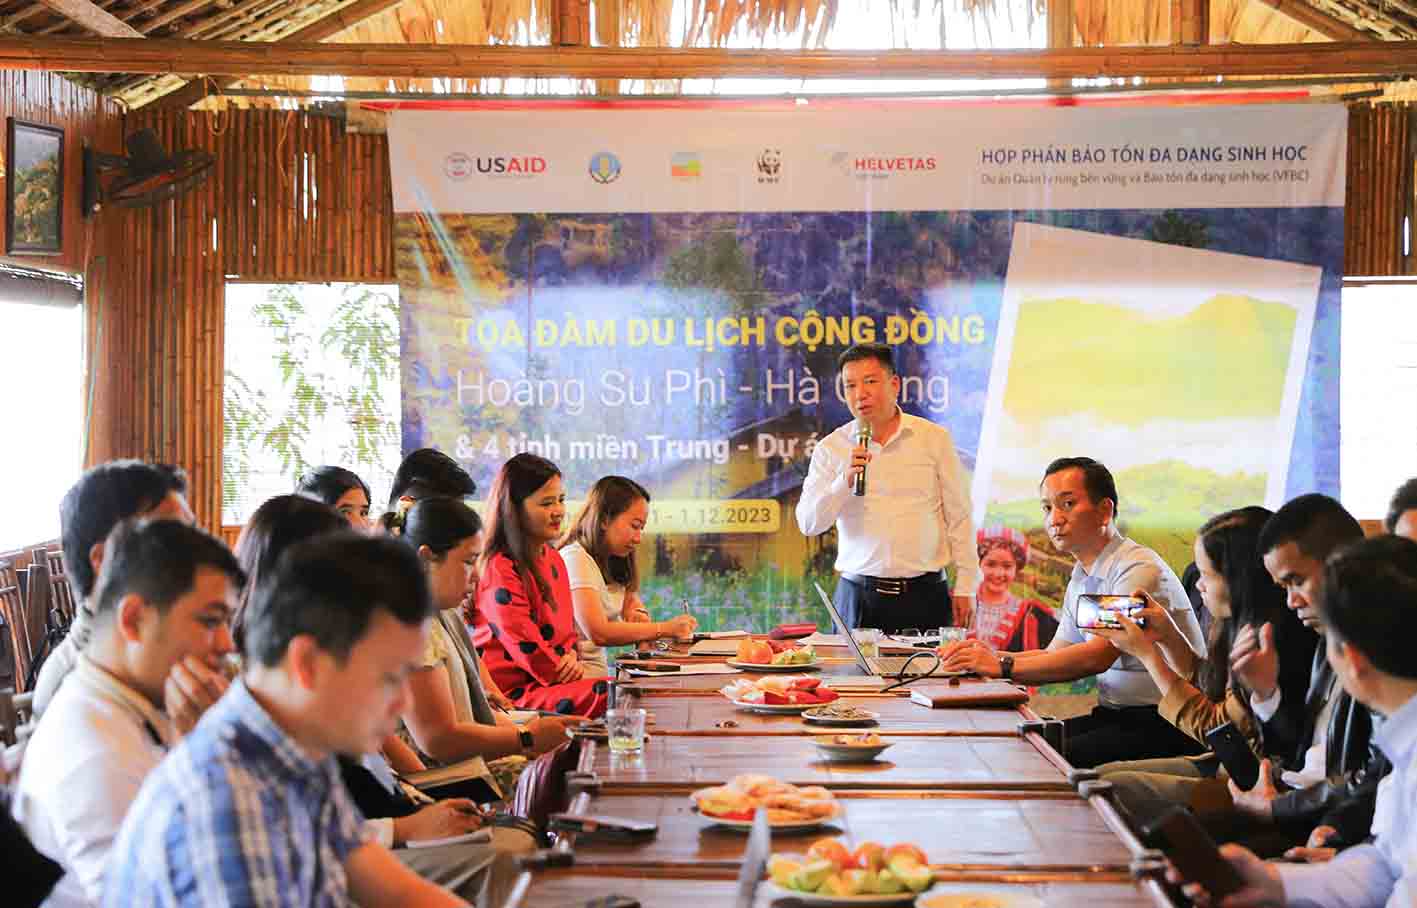 Tọa đàm du lịch cộng đồng giữa huyện Hoàng Su Phì với 4 tỉnh miền trung